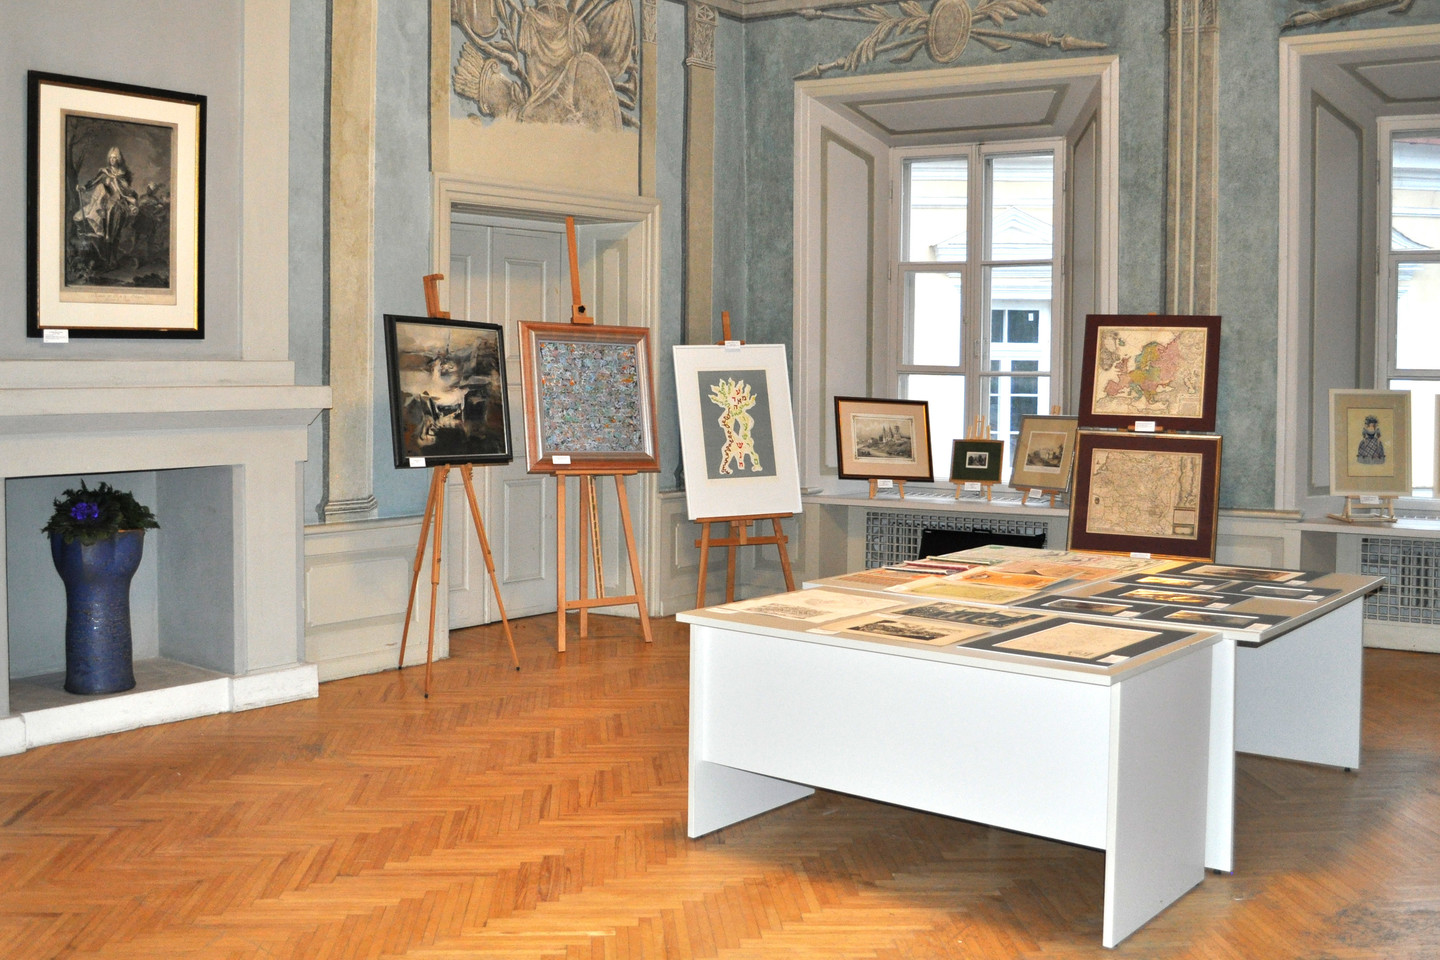  Prieš aukcionus yra rengiamos kūrinių ekspozicijos. 